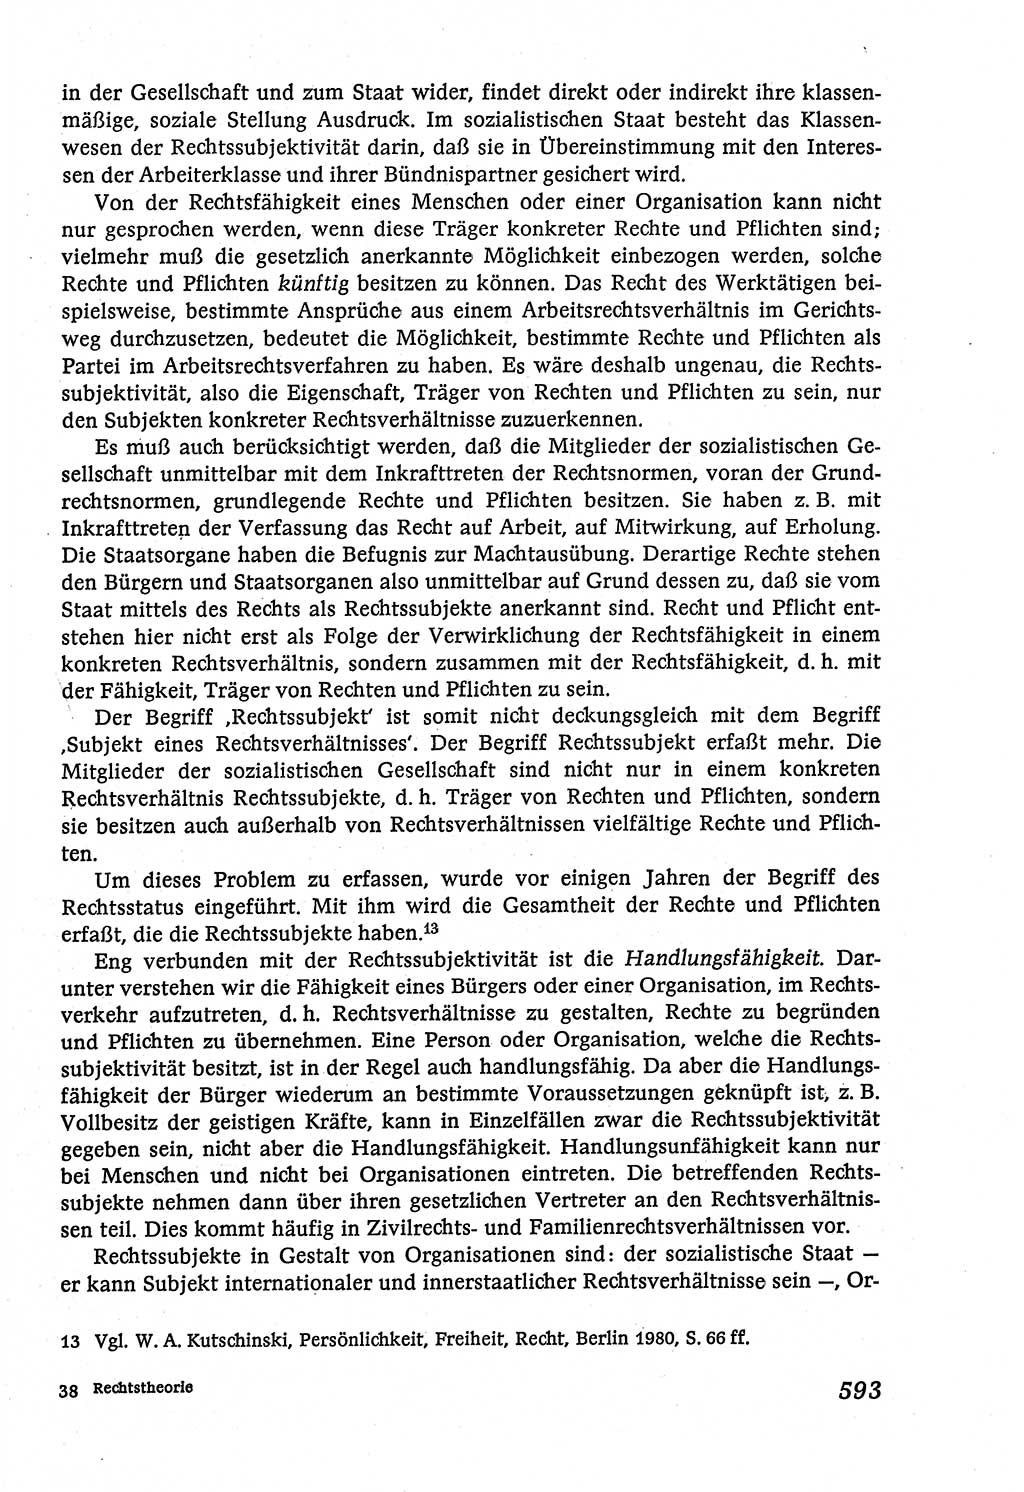 Marxistisch-leninistische (ML) Staats- und Rechtstheorie [Deutsche Demokratische Republik (DDR)], Lehrbuch 1980, Seite 593 (ML St.-R.-Th. DDR Lb. 1980, S. 593)